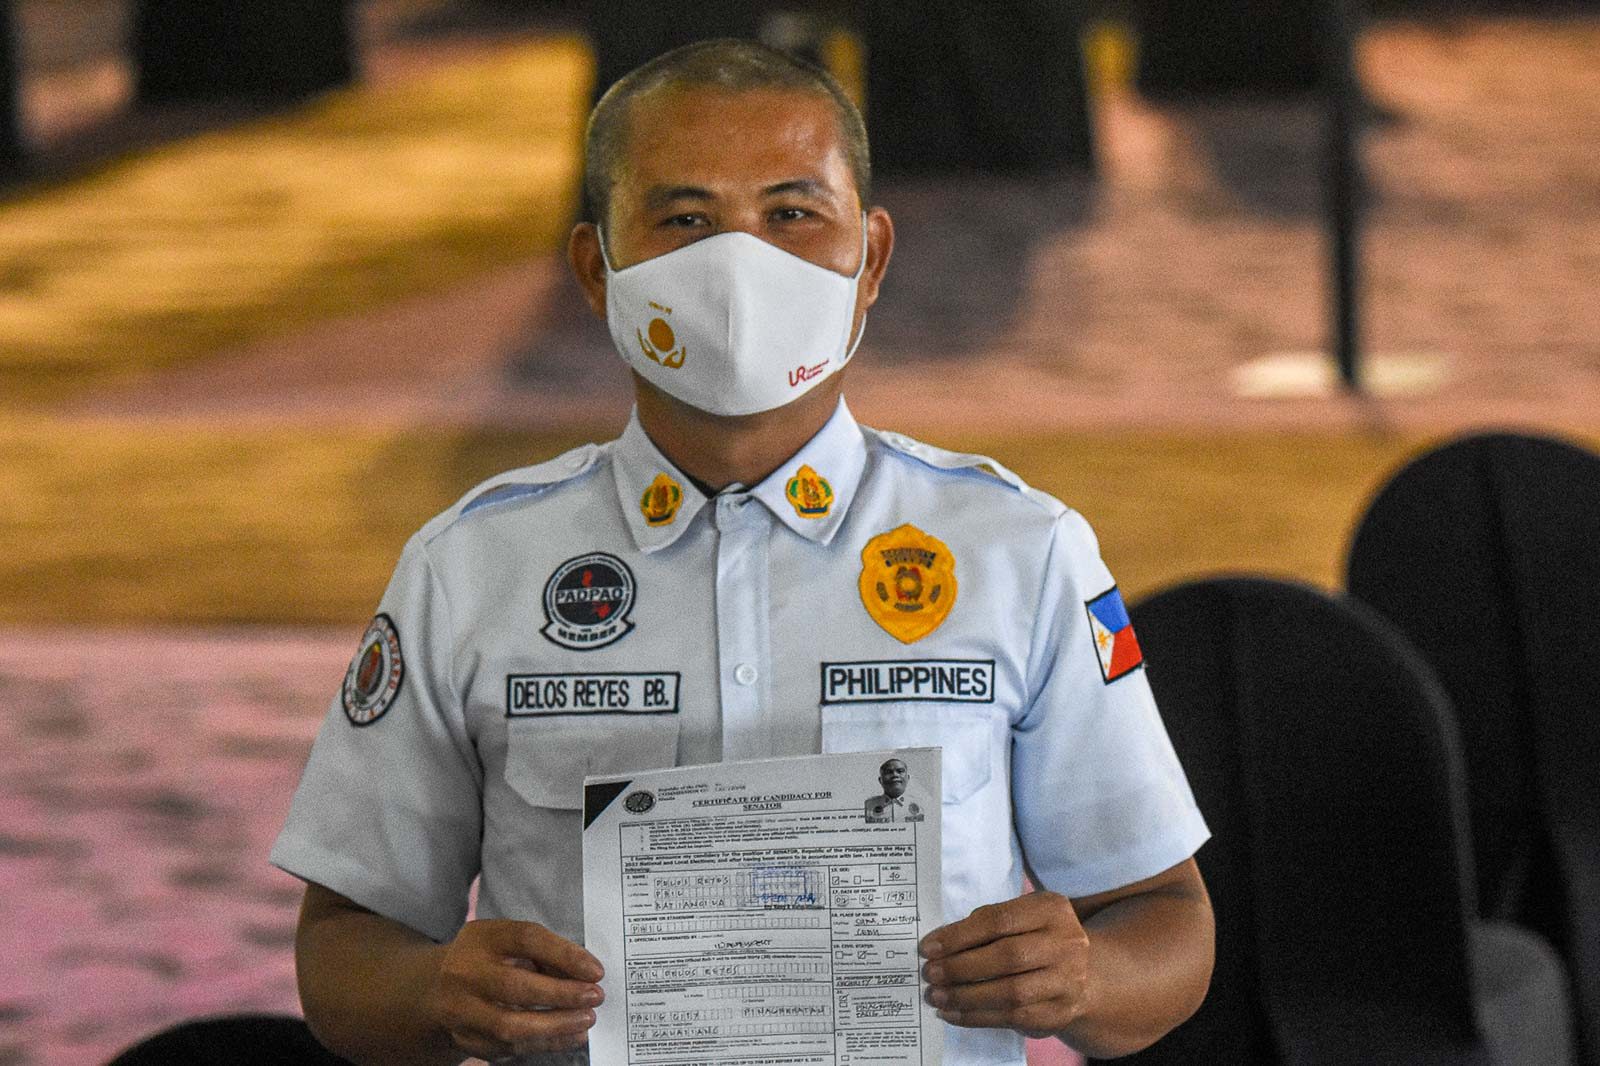 Senatorial aspirant security guard’s speech wins over netizens